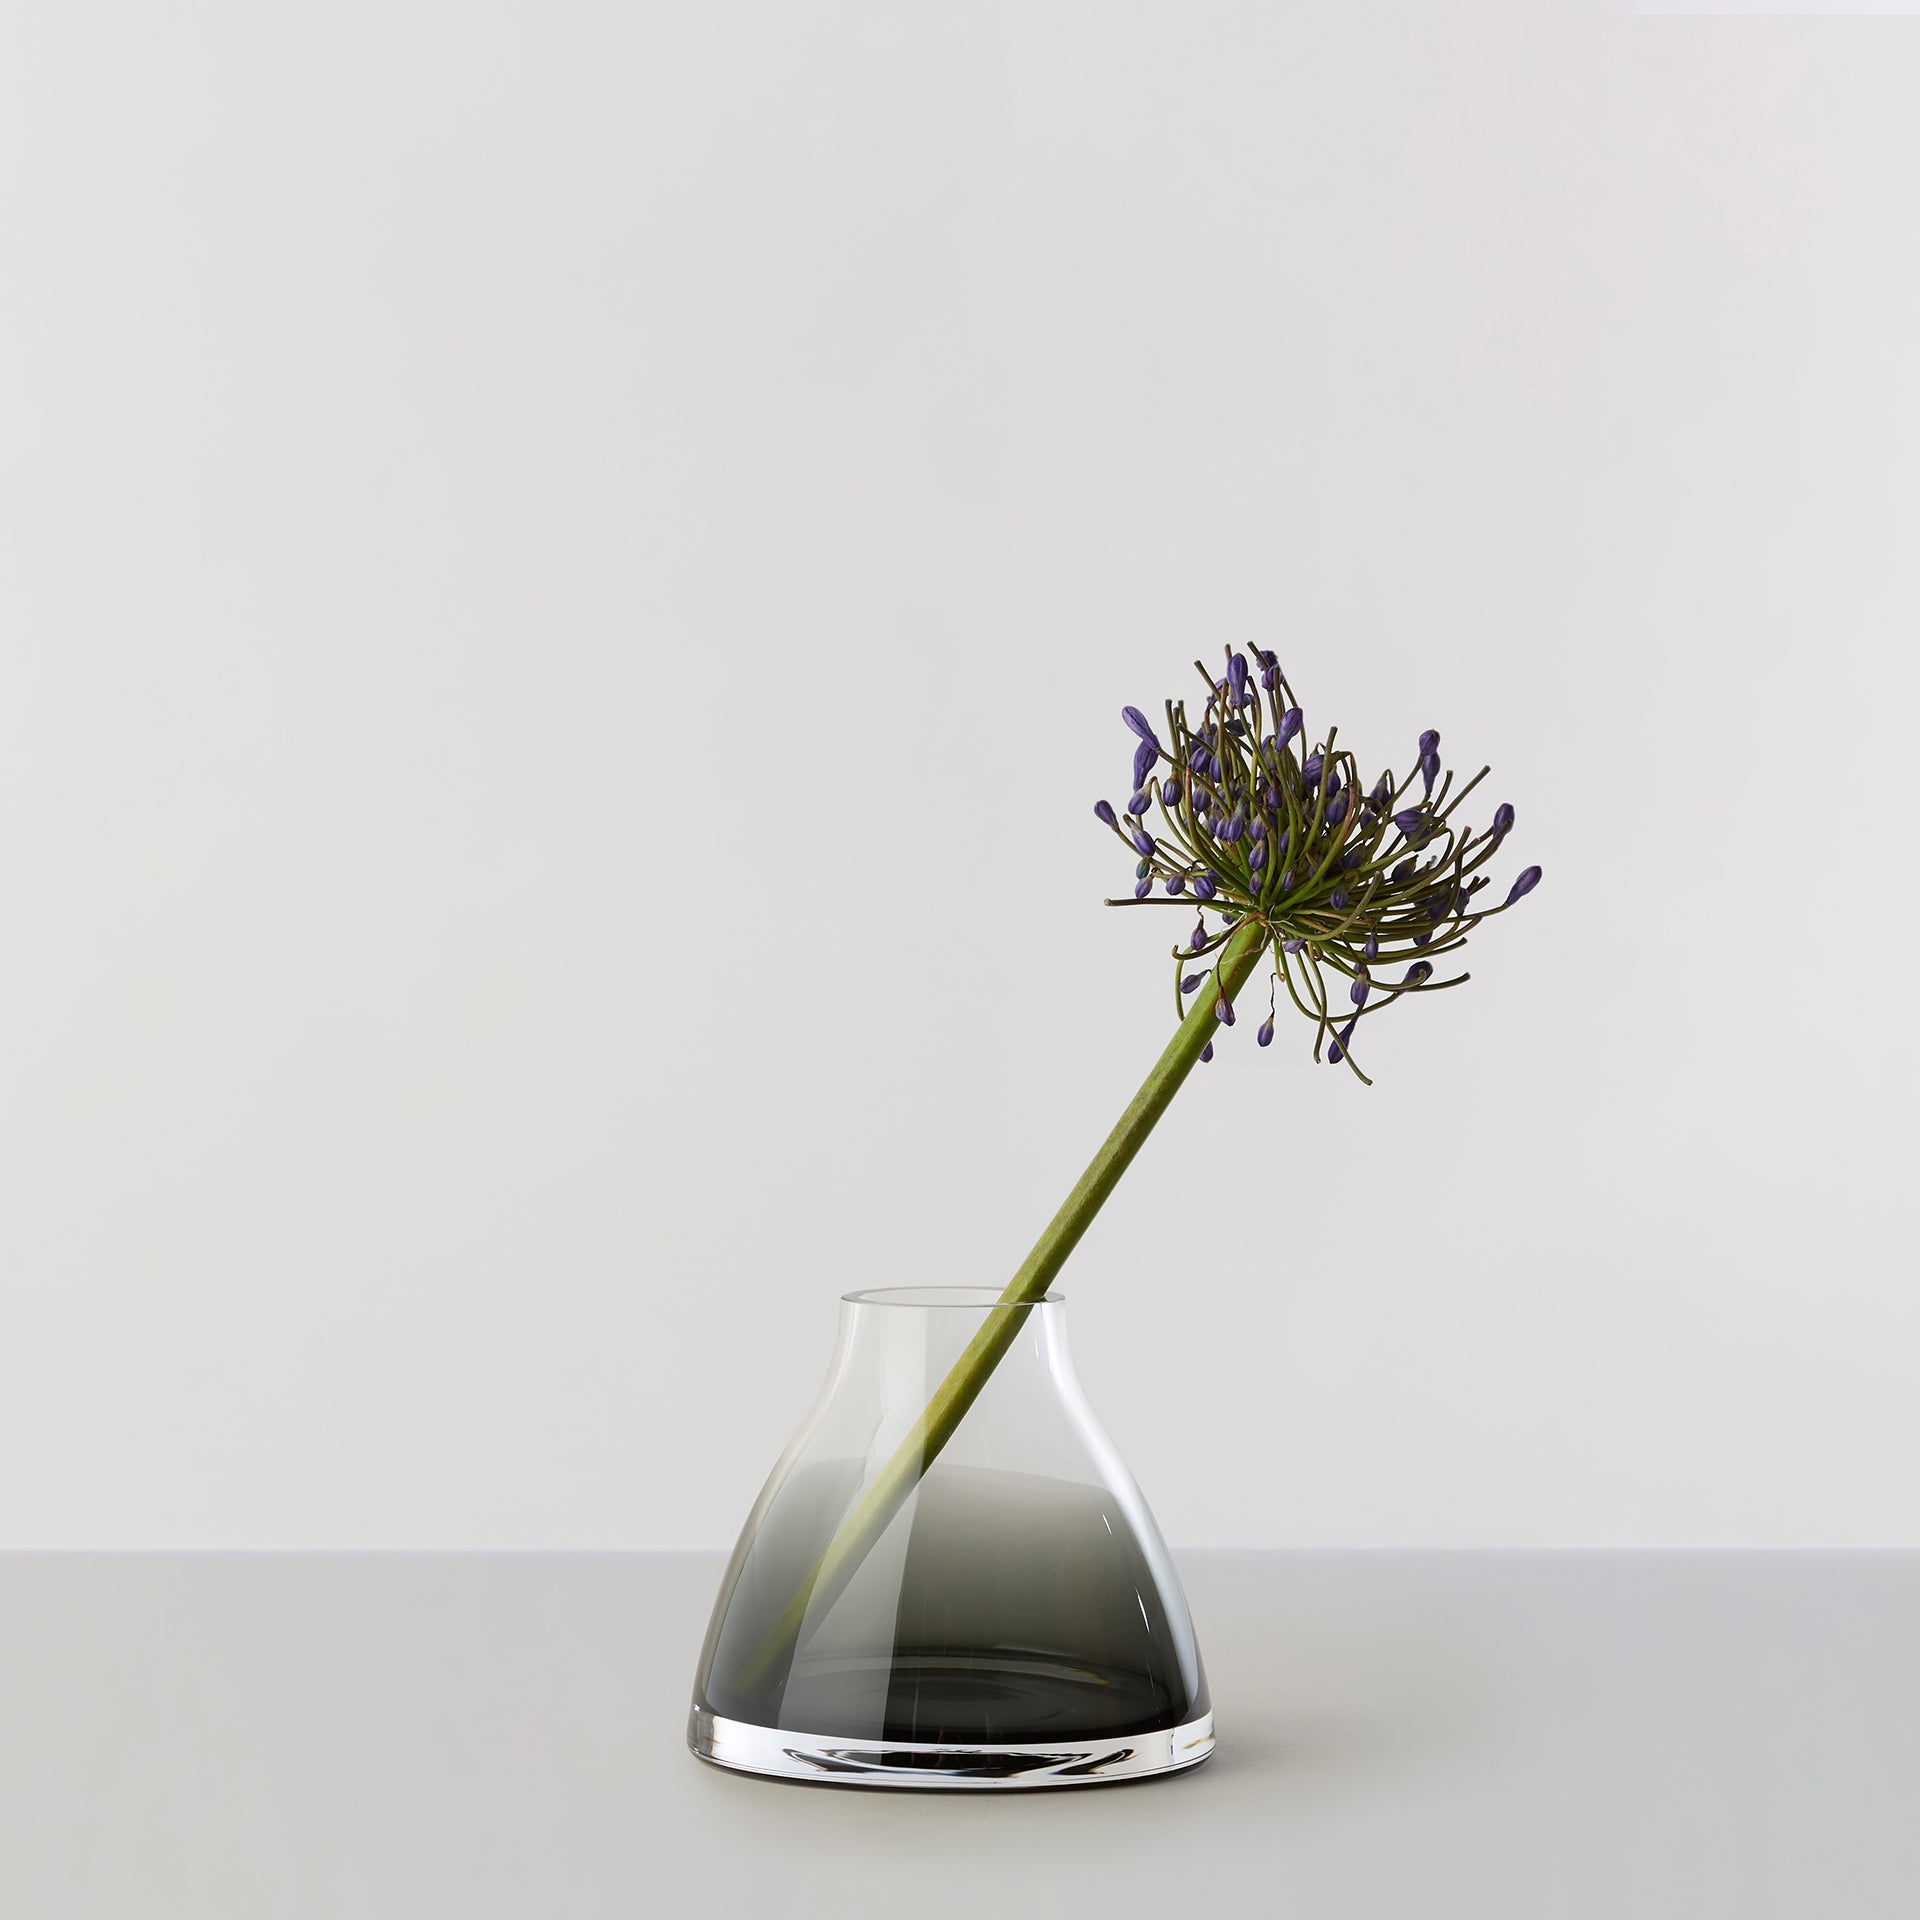 Billede af Flower Vase no. 1 - Smoked grey